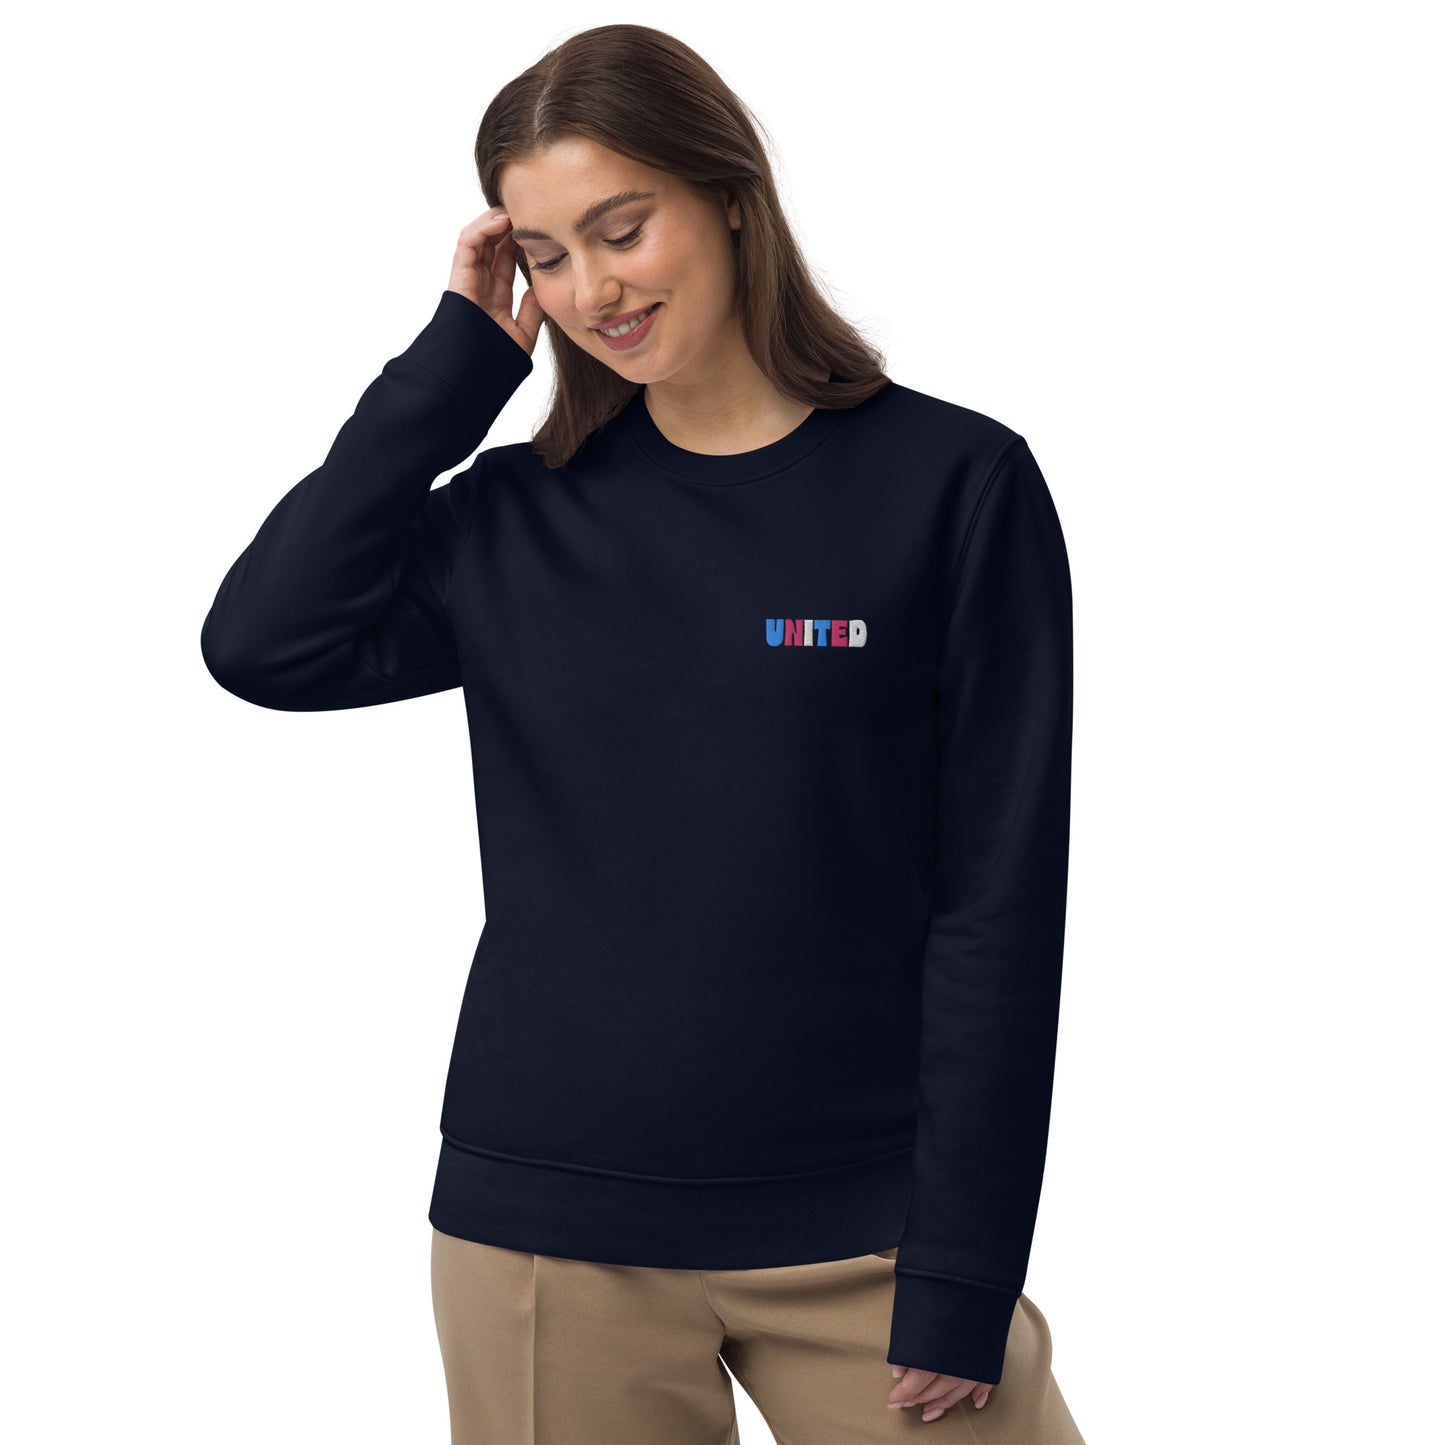 Eco sweatshirt: United